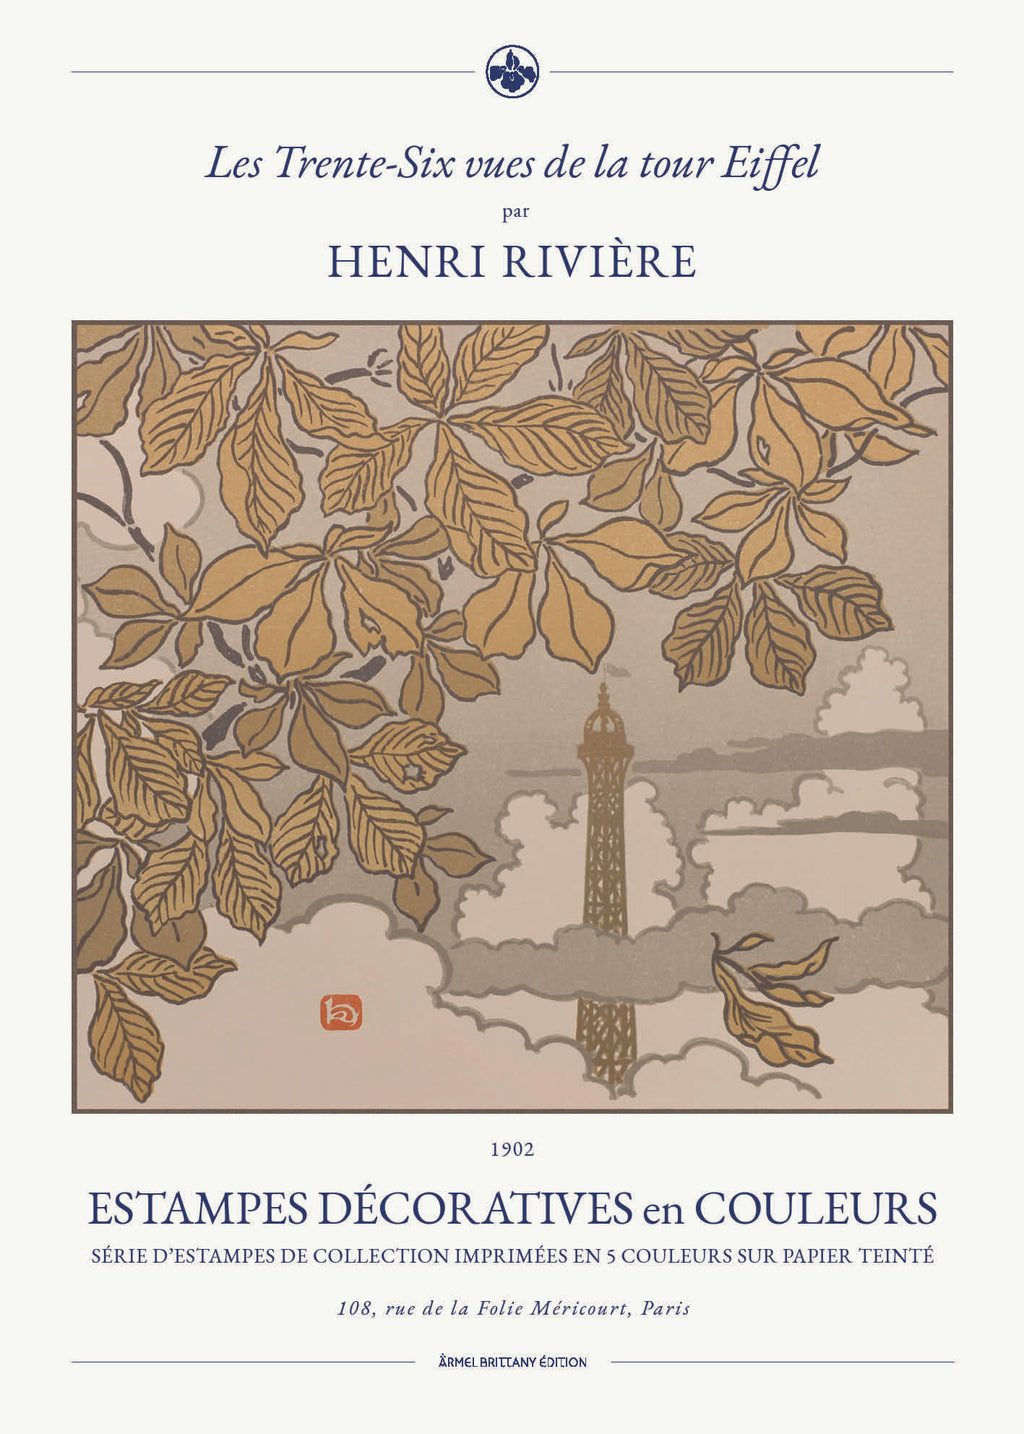 Henri Riviere affiche décoration Tour Eiffel Paris